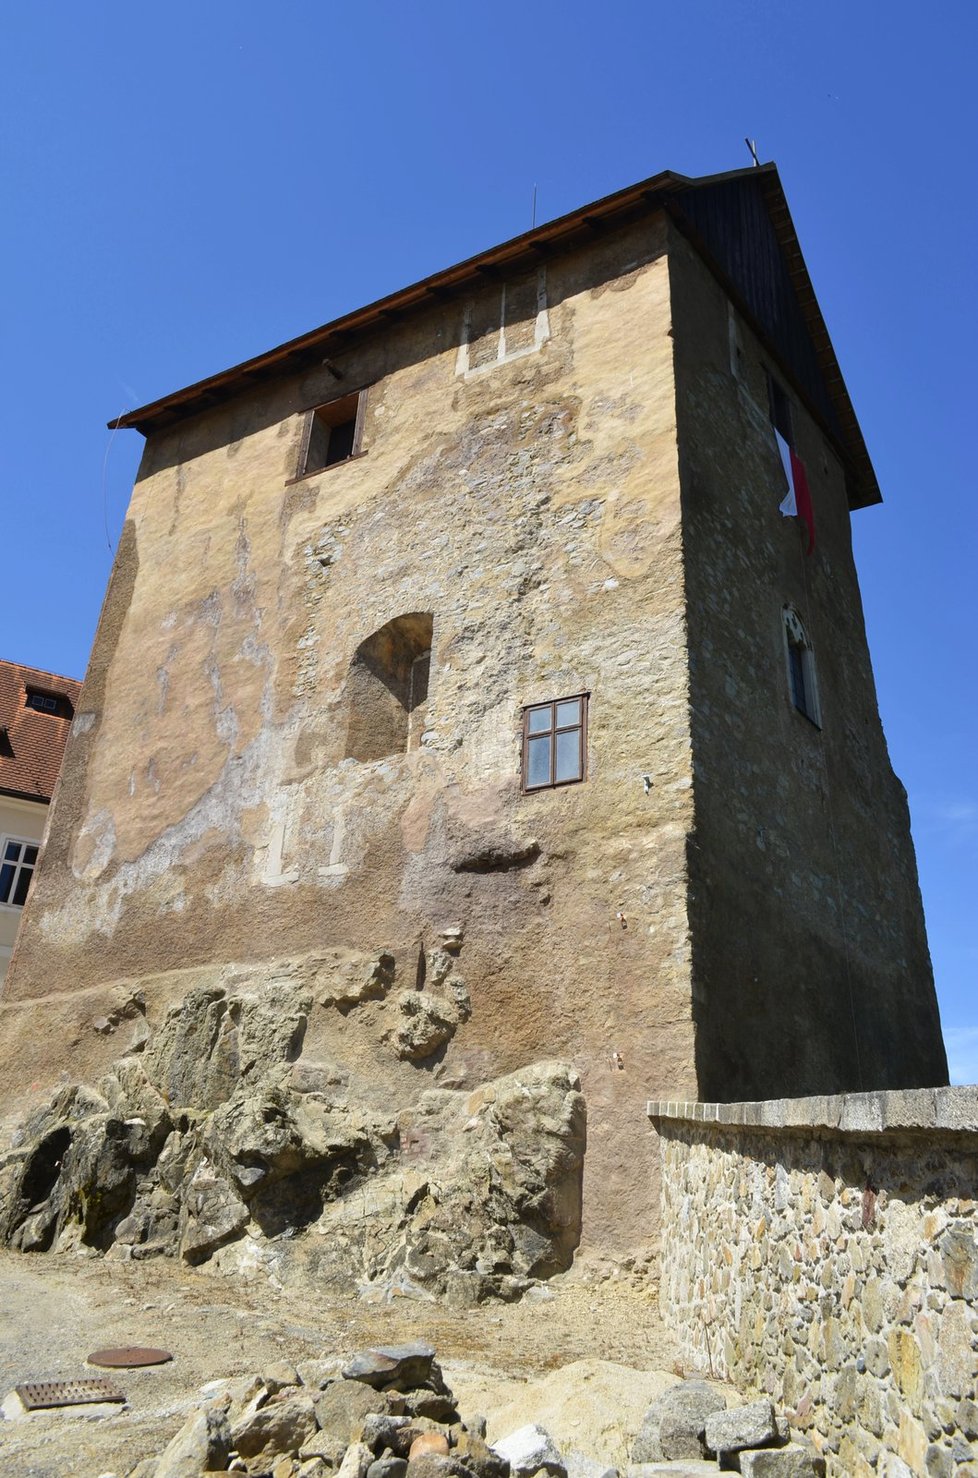 Tohle je věž hradu, kde se relikviář sv. Maura a láhve s víny našly.